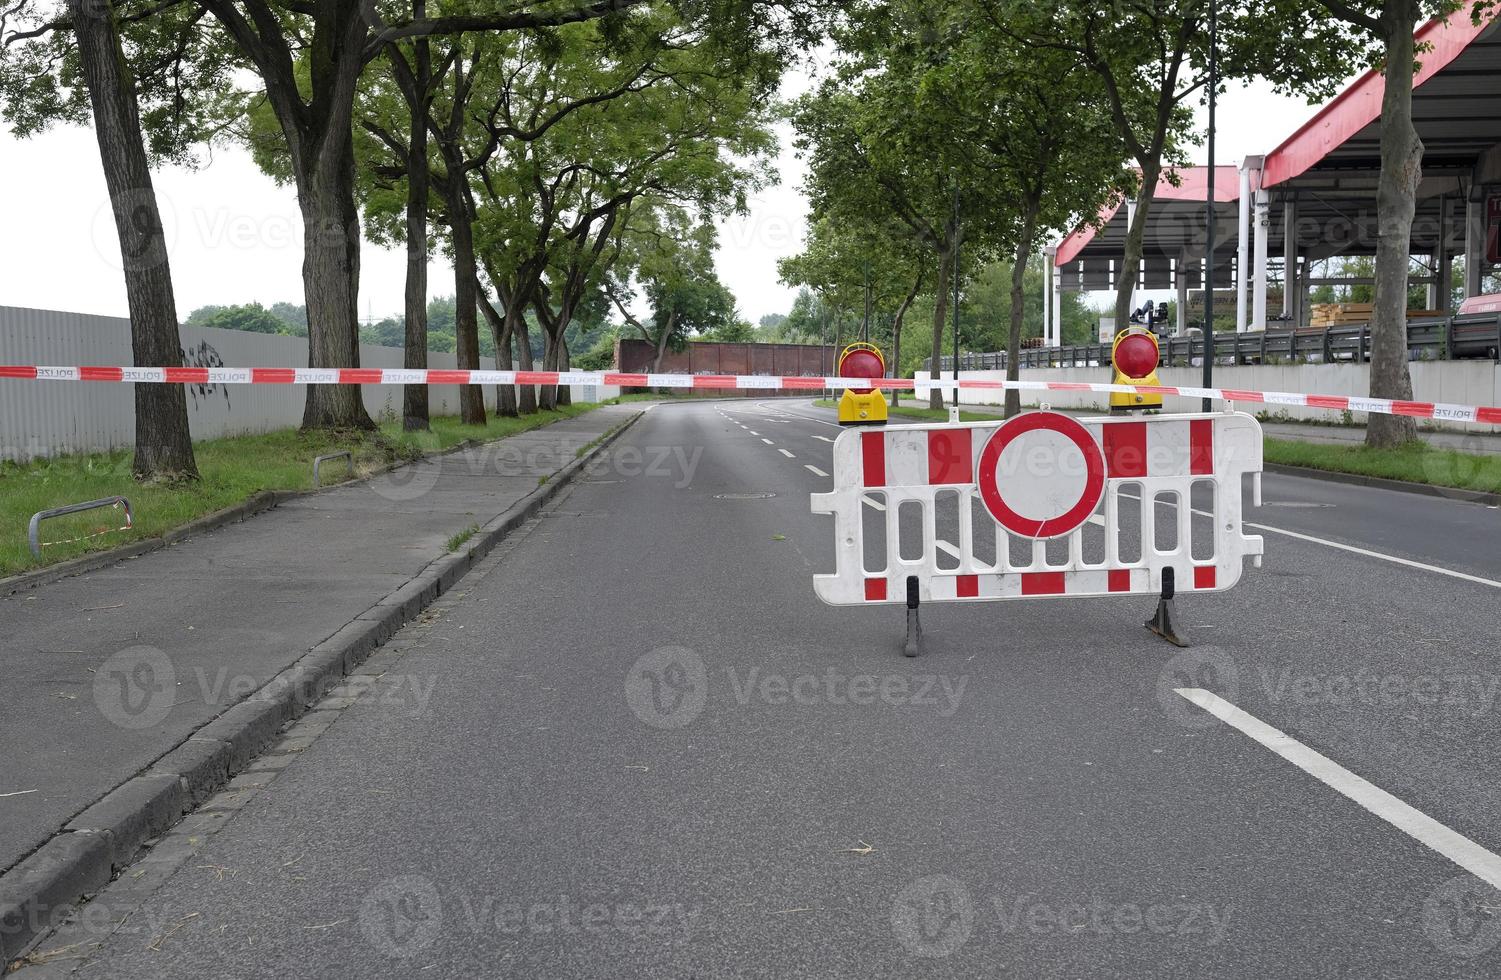 clima extremo - rua fechada após as inundações em dusseldorf, alemanha foto